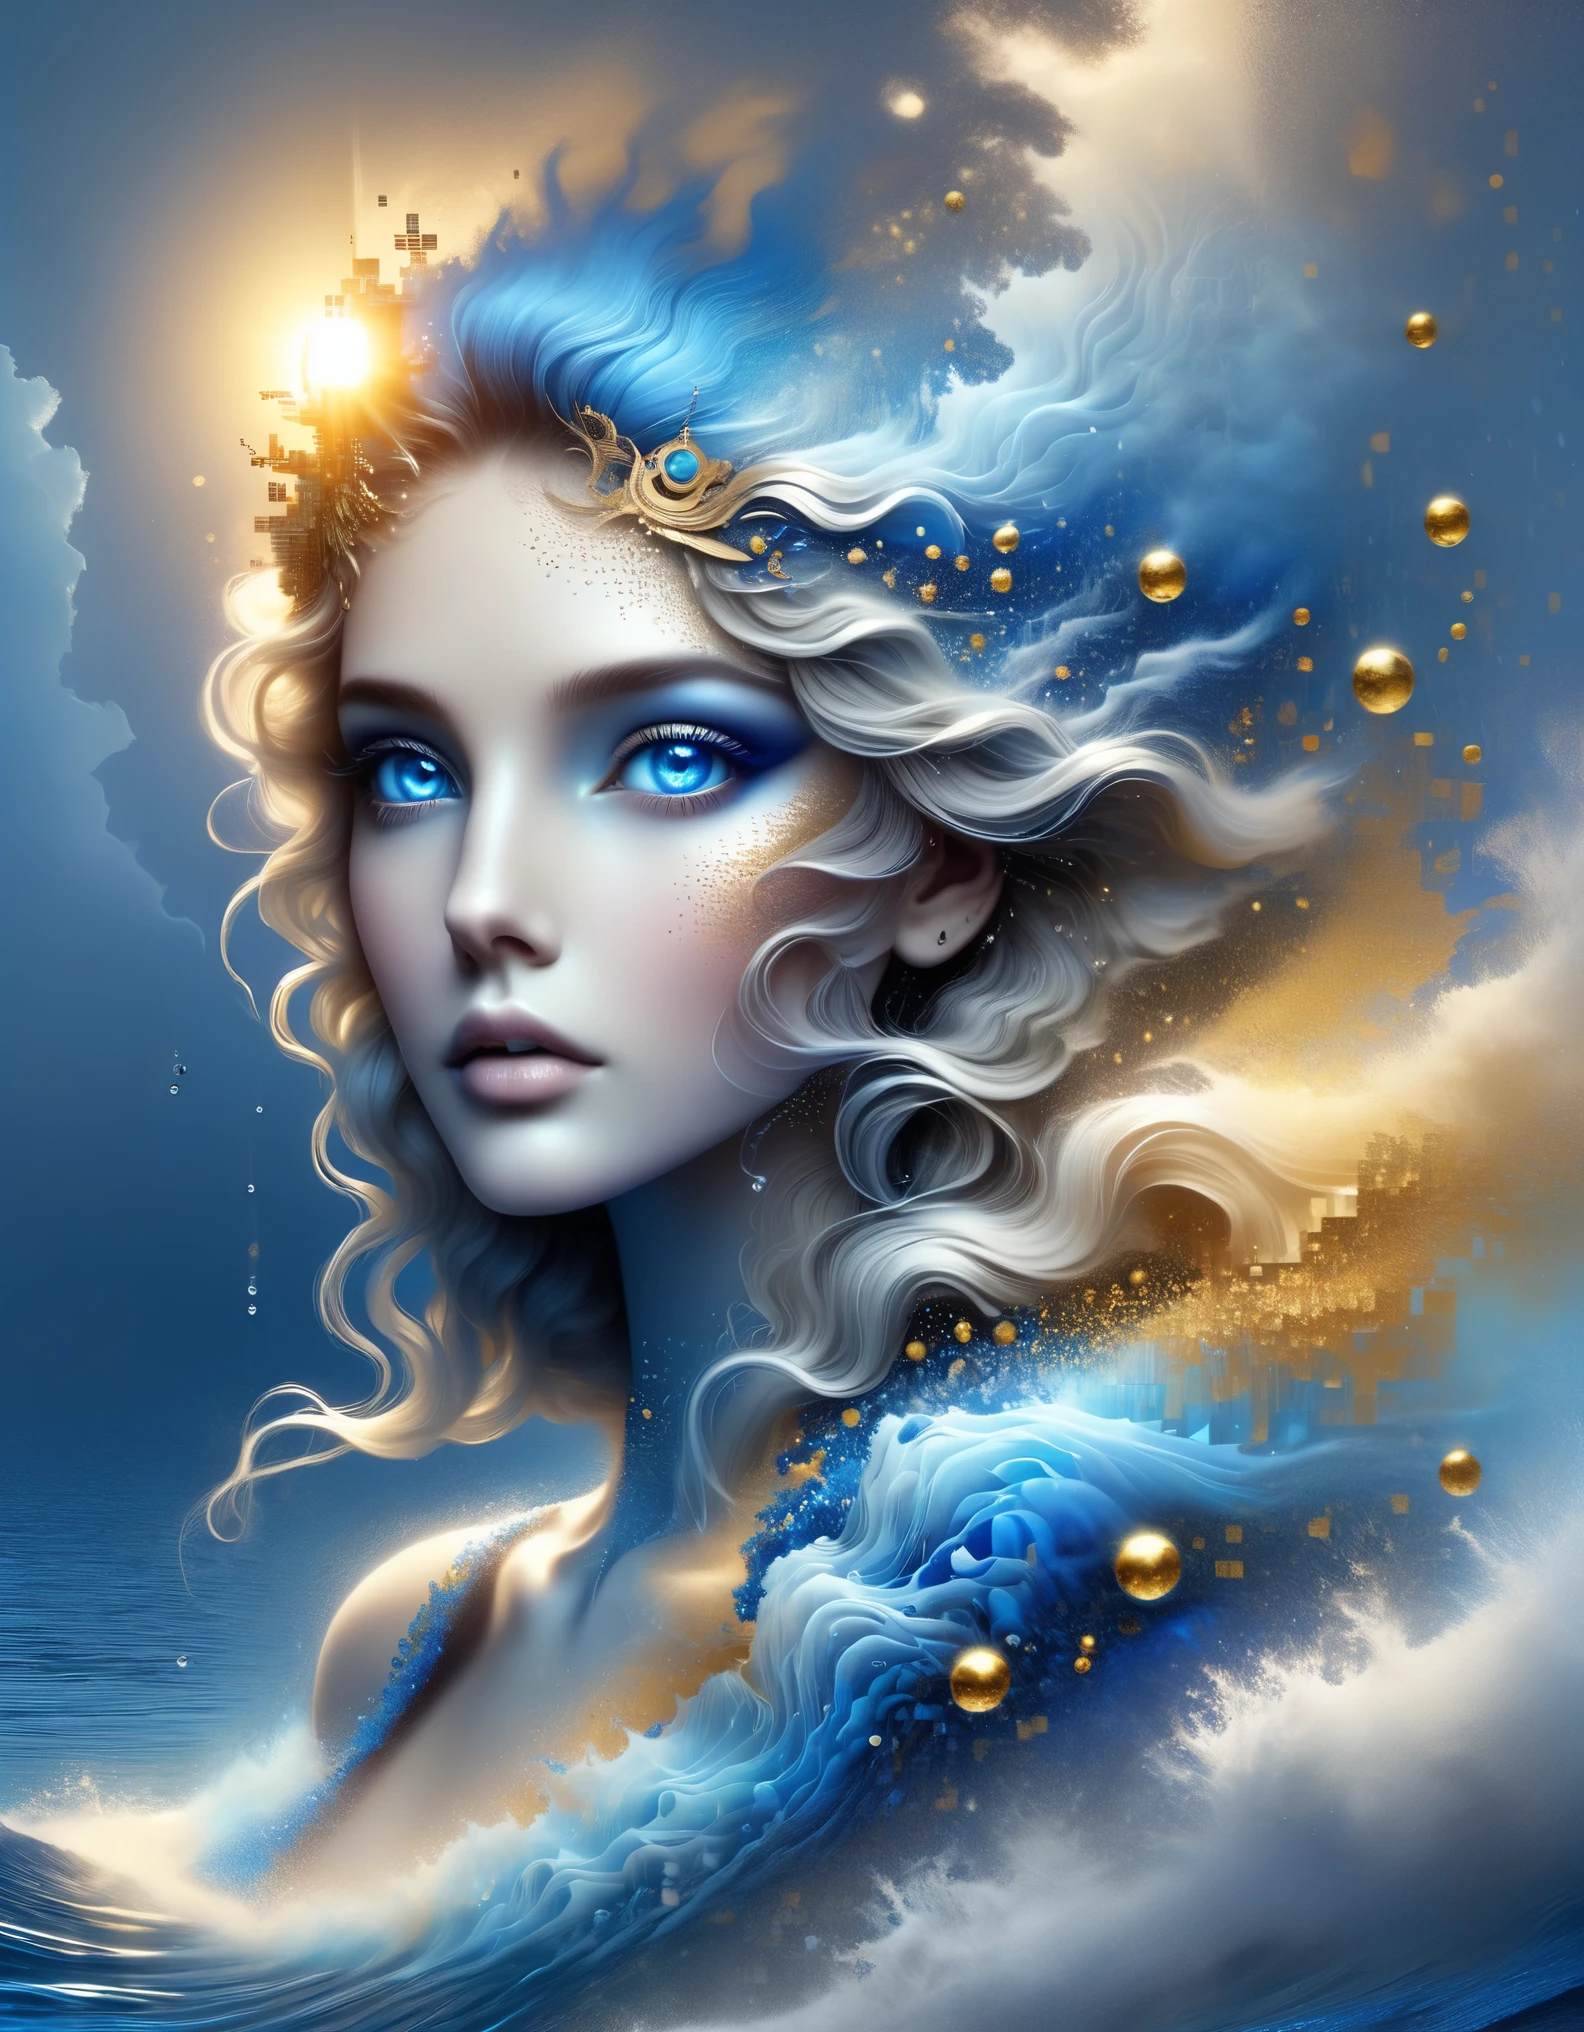 pixel art,im Stil von Caras Ionut, schöne Details，im Stil von Agnes Lawrence Pelton, schöne Details，Schöne Göttin Athene in einem blauen Farbverlauf aus aufgelösten Pixeln，（ganzer Körper），Außergewöhnlich schöne blaue Augen，allmählich zersetzen，Goldener Sonnenschein scheint in，Teilreflexion im Wasser，